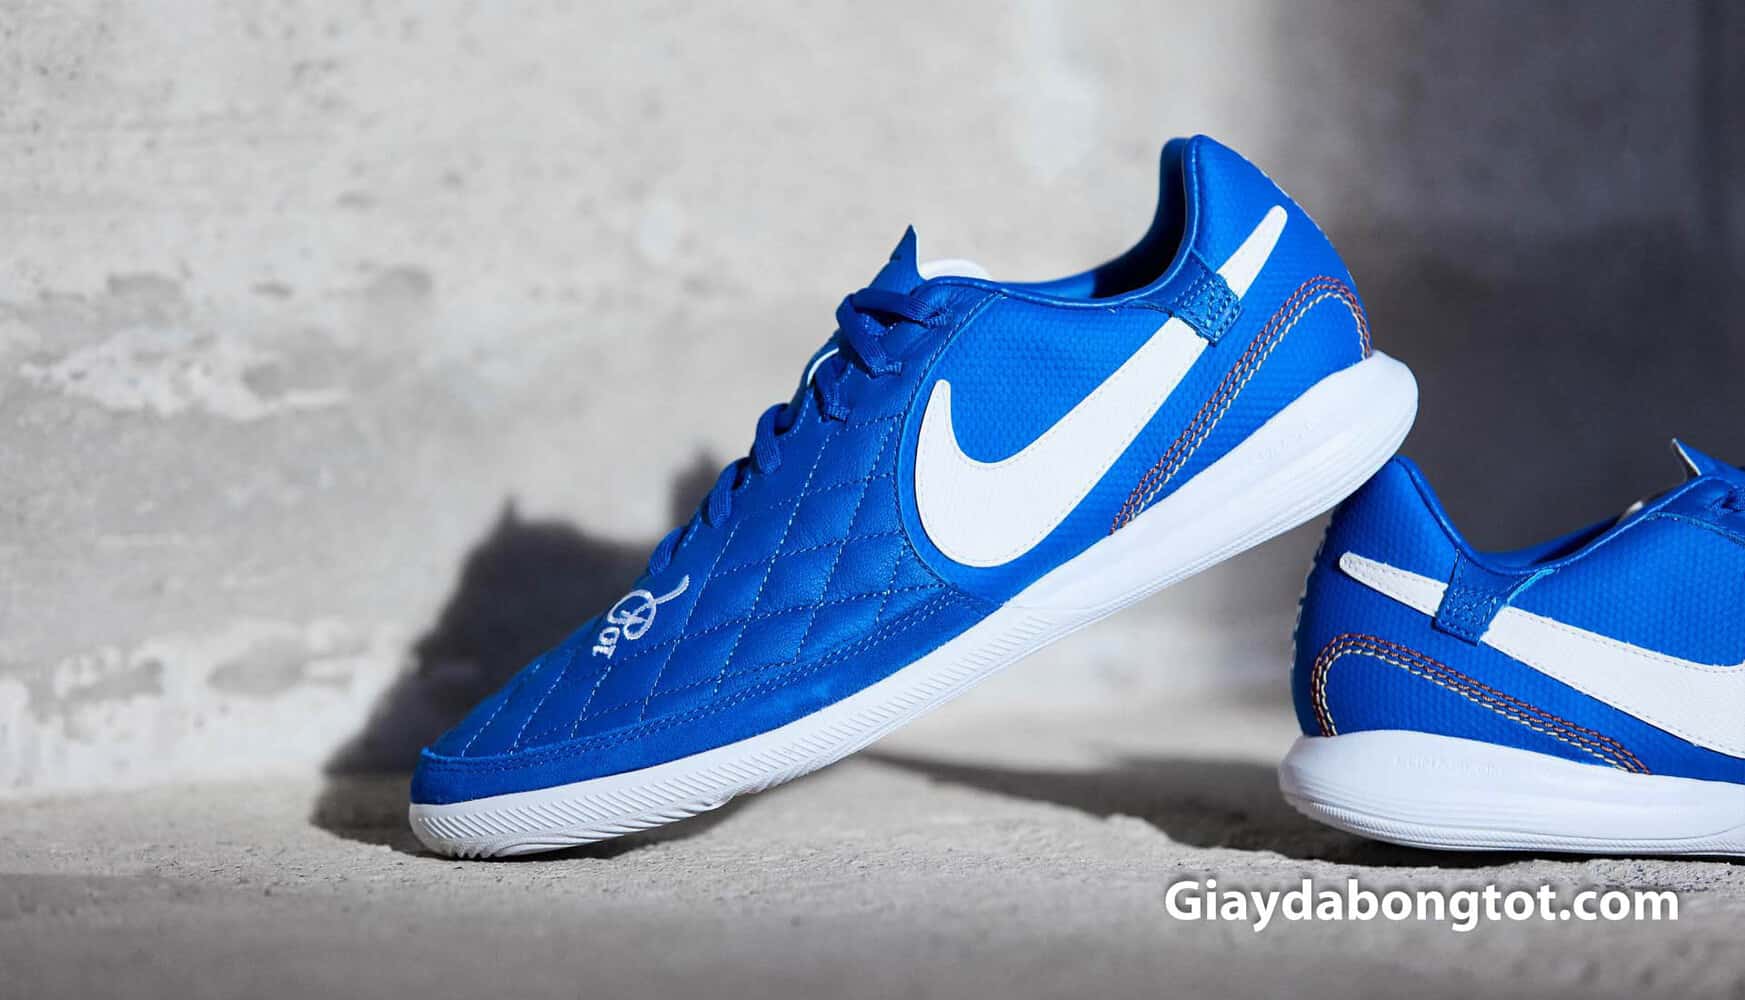 Dòng giày Nike TiempoX là dòng giày được giới trẻ cực kỳ yêu thích vừa hỗ trợ đá bóng vừa đi chơi